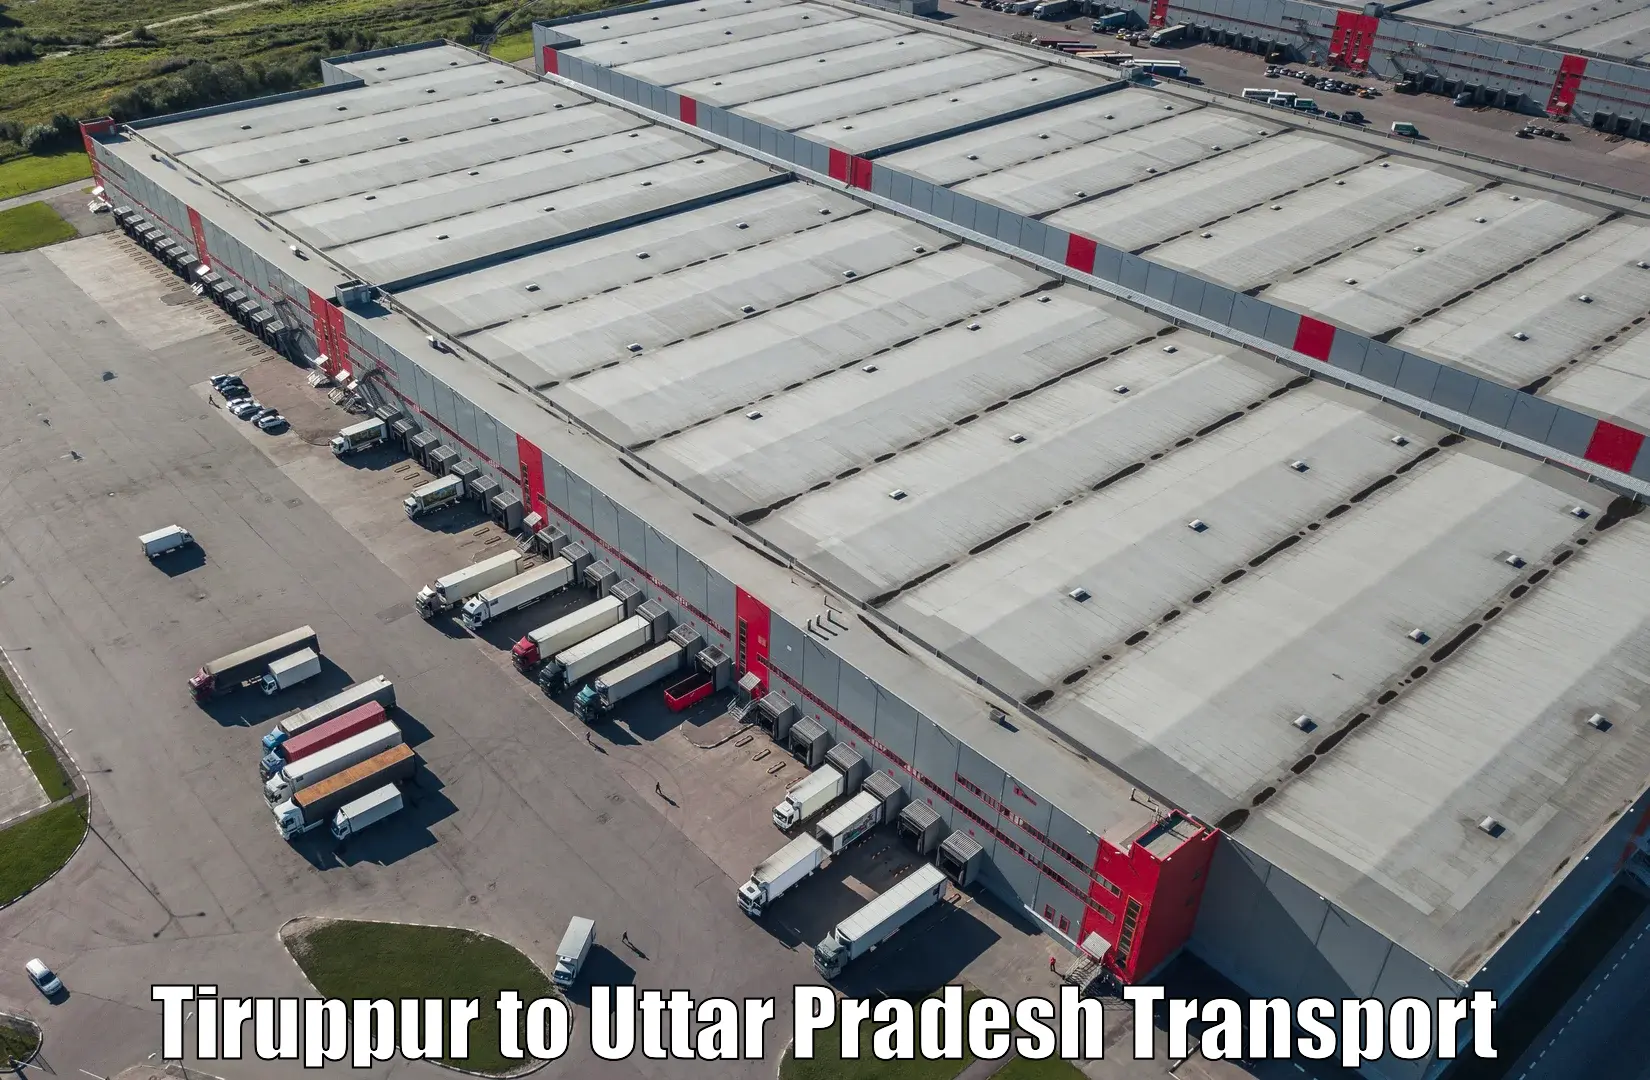 Express transport services Tiruppur to Dibai